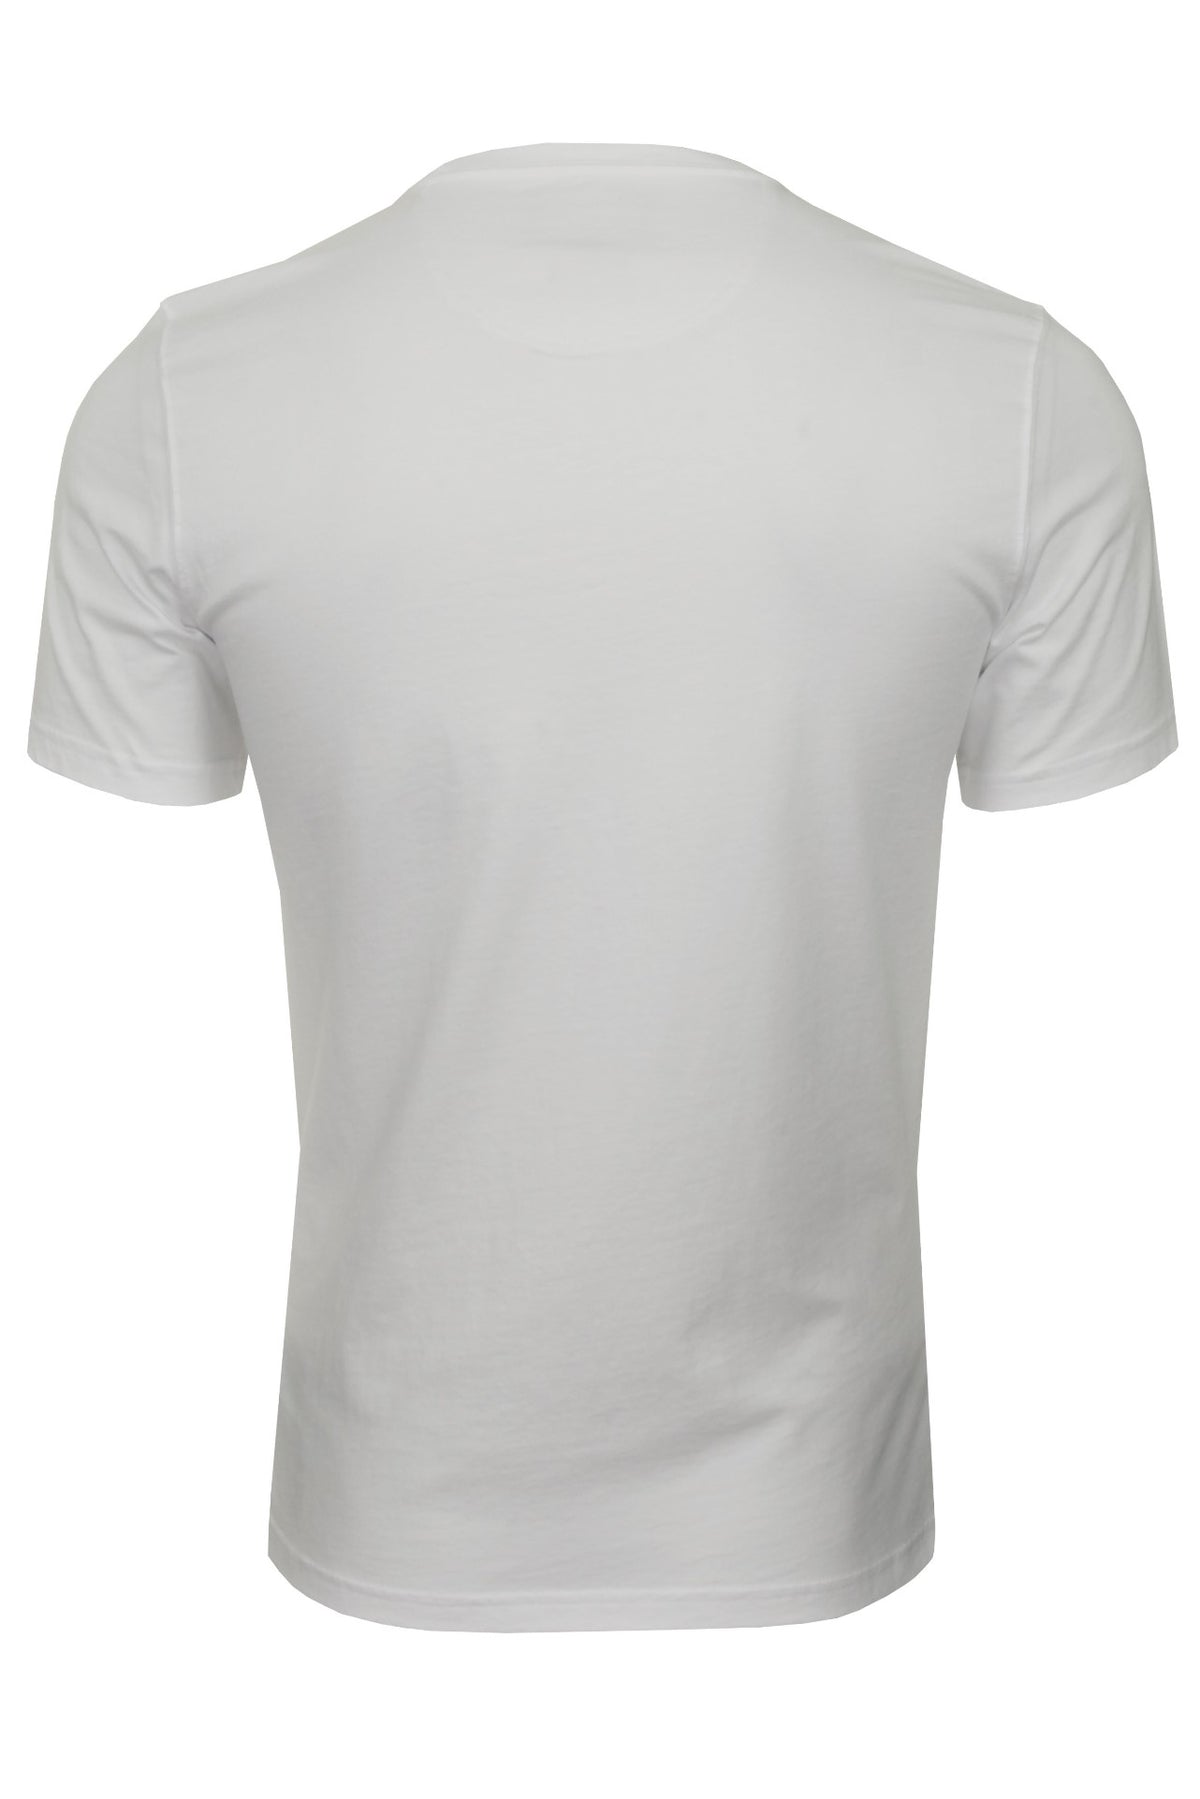 Barbour Men's 'Preppy Tee' T-Shirt - Short Sleeved, 03, Mts0502, White